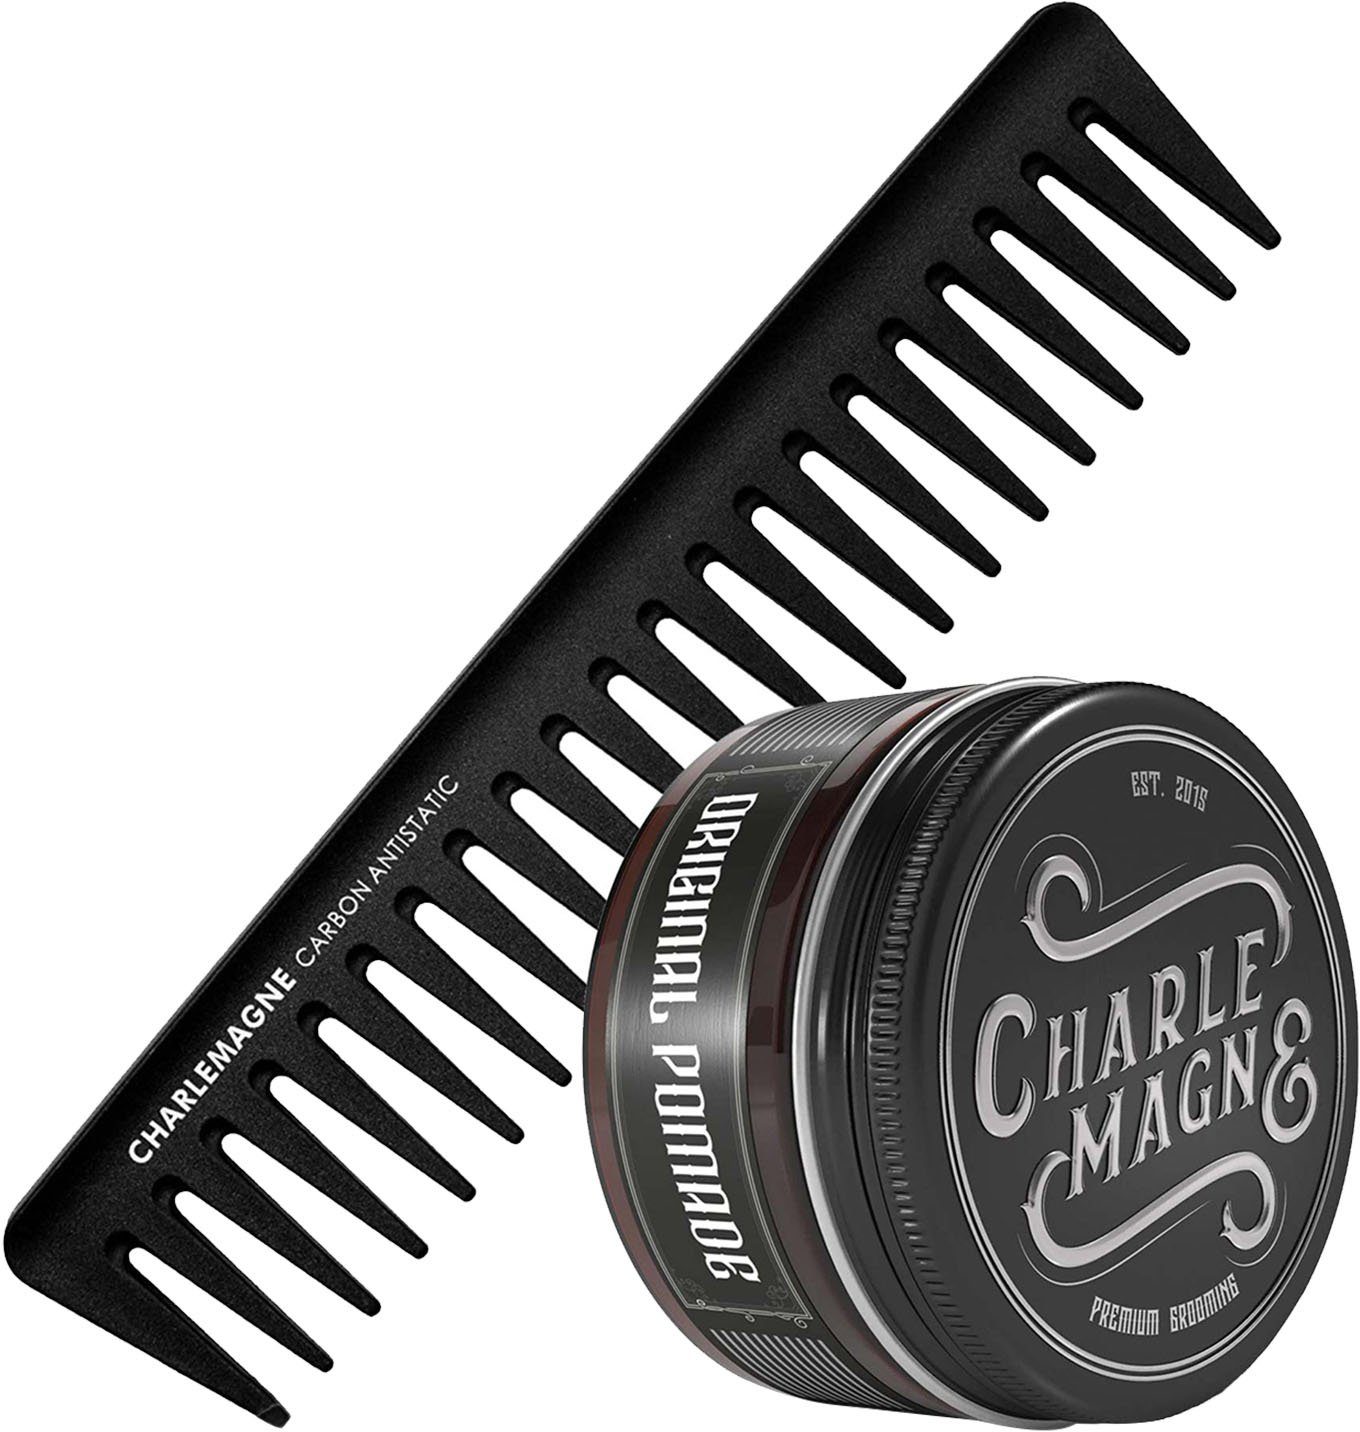 CHARLEMAGNE Haarpflege-Set The 2-tlg. OG's Essentials